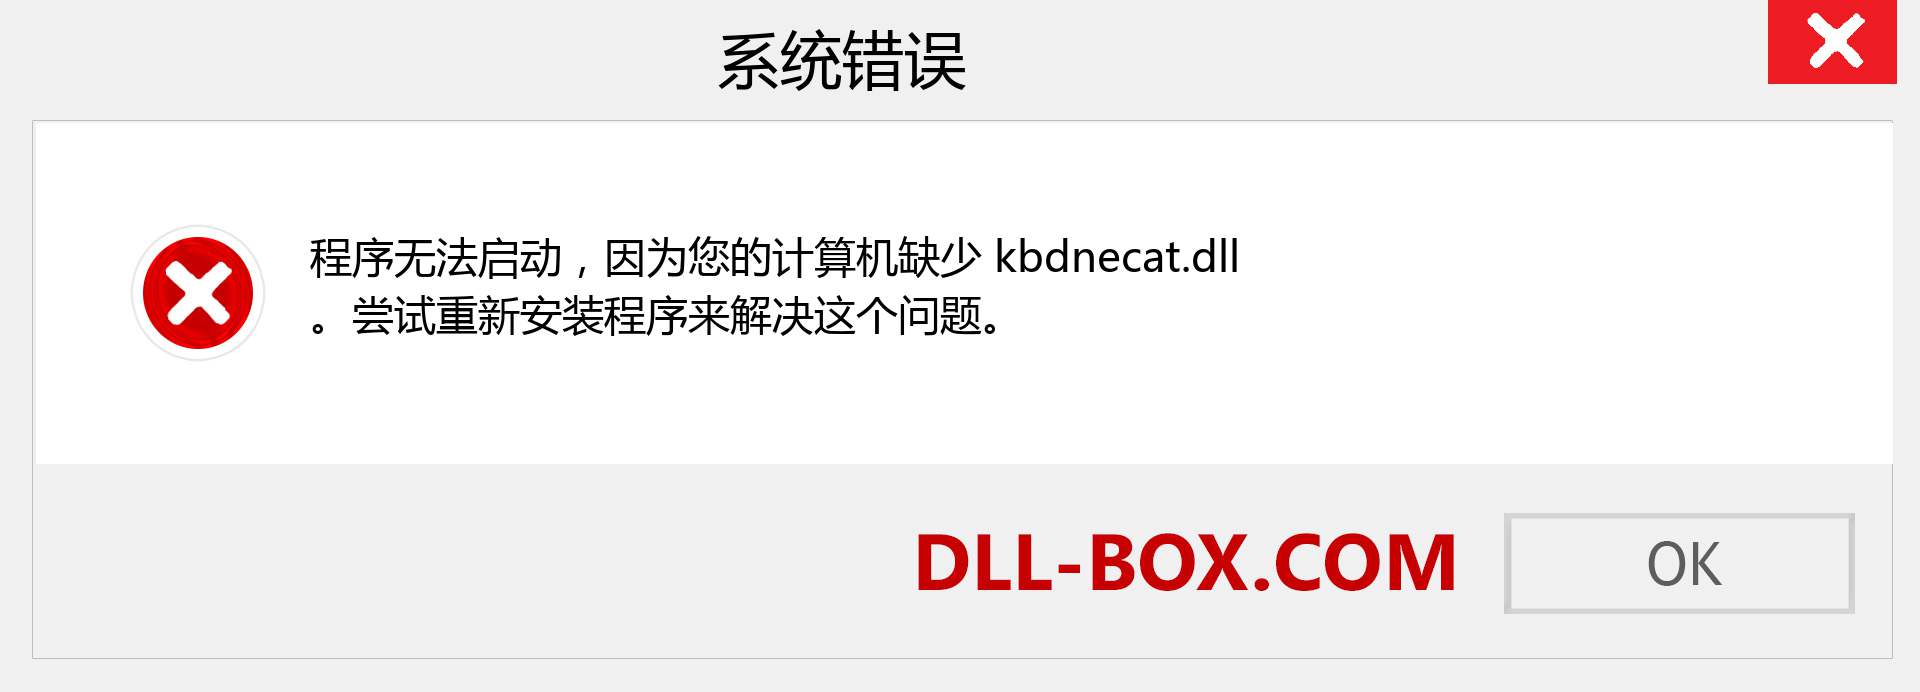 kbdnecat.dll 文件丢失？。 适用于 Windows 7、8、10 的下载 - 修复 Windows、照片、图像上的 kbdnecat dll 丢失错误